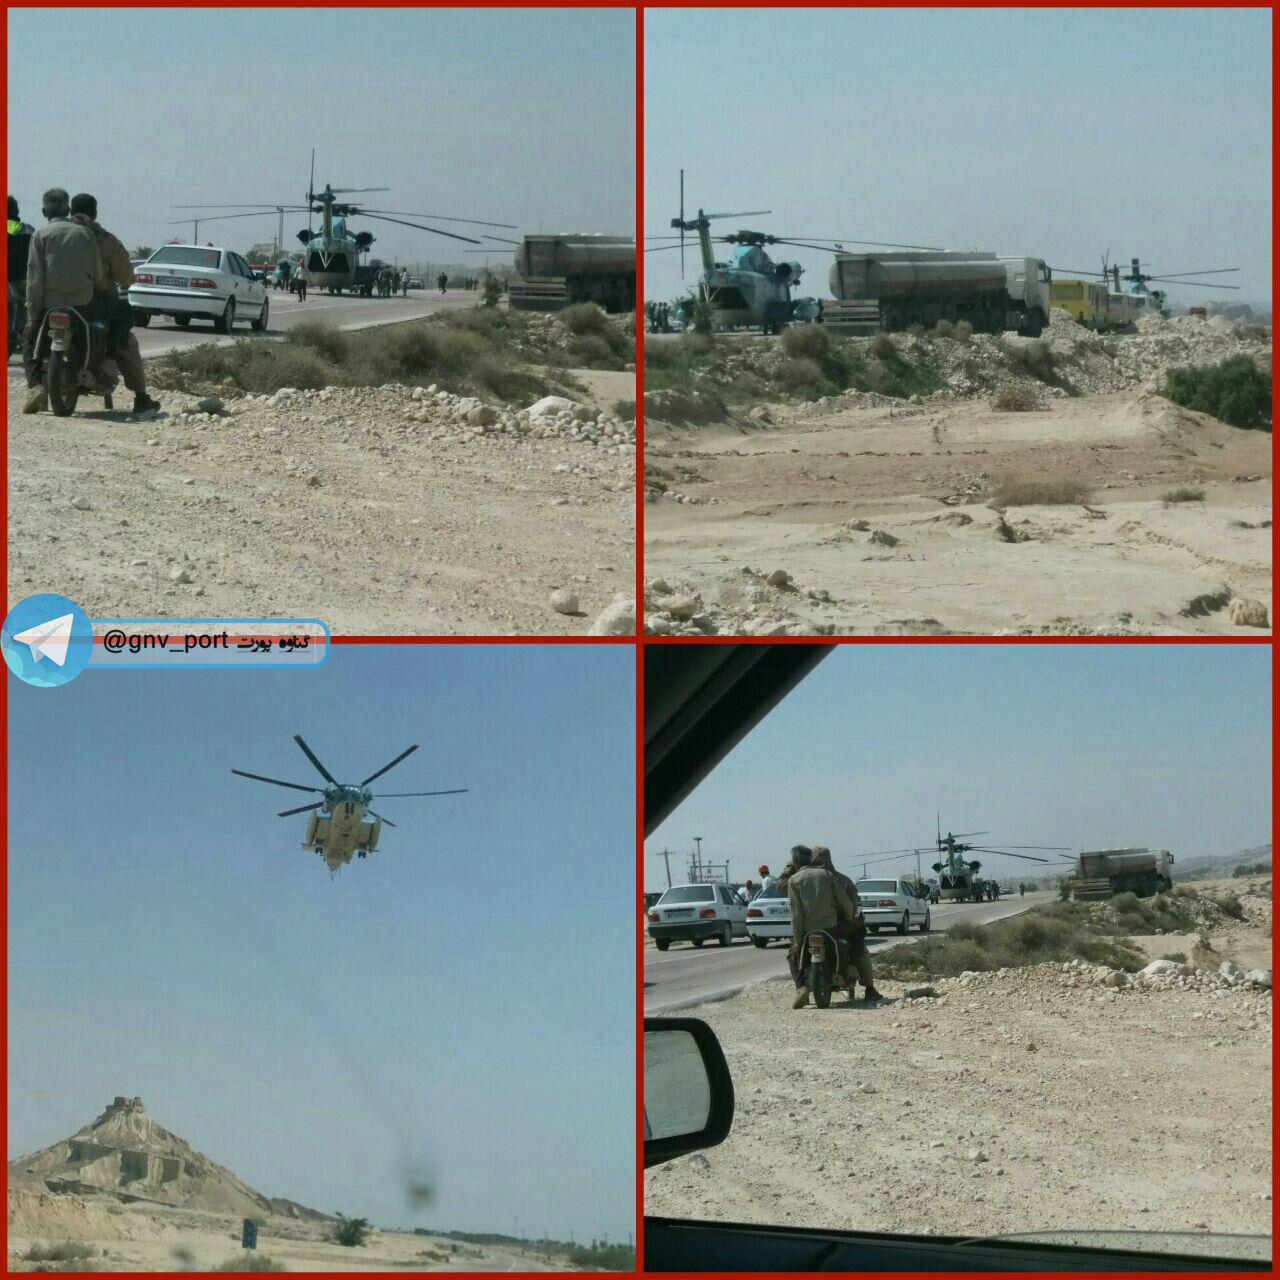 فرود اضطراری بالگرد ارتش در بوشهر (عکس)